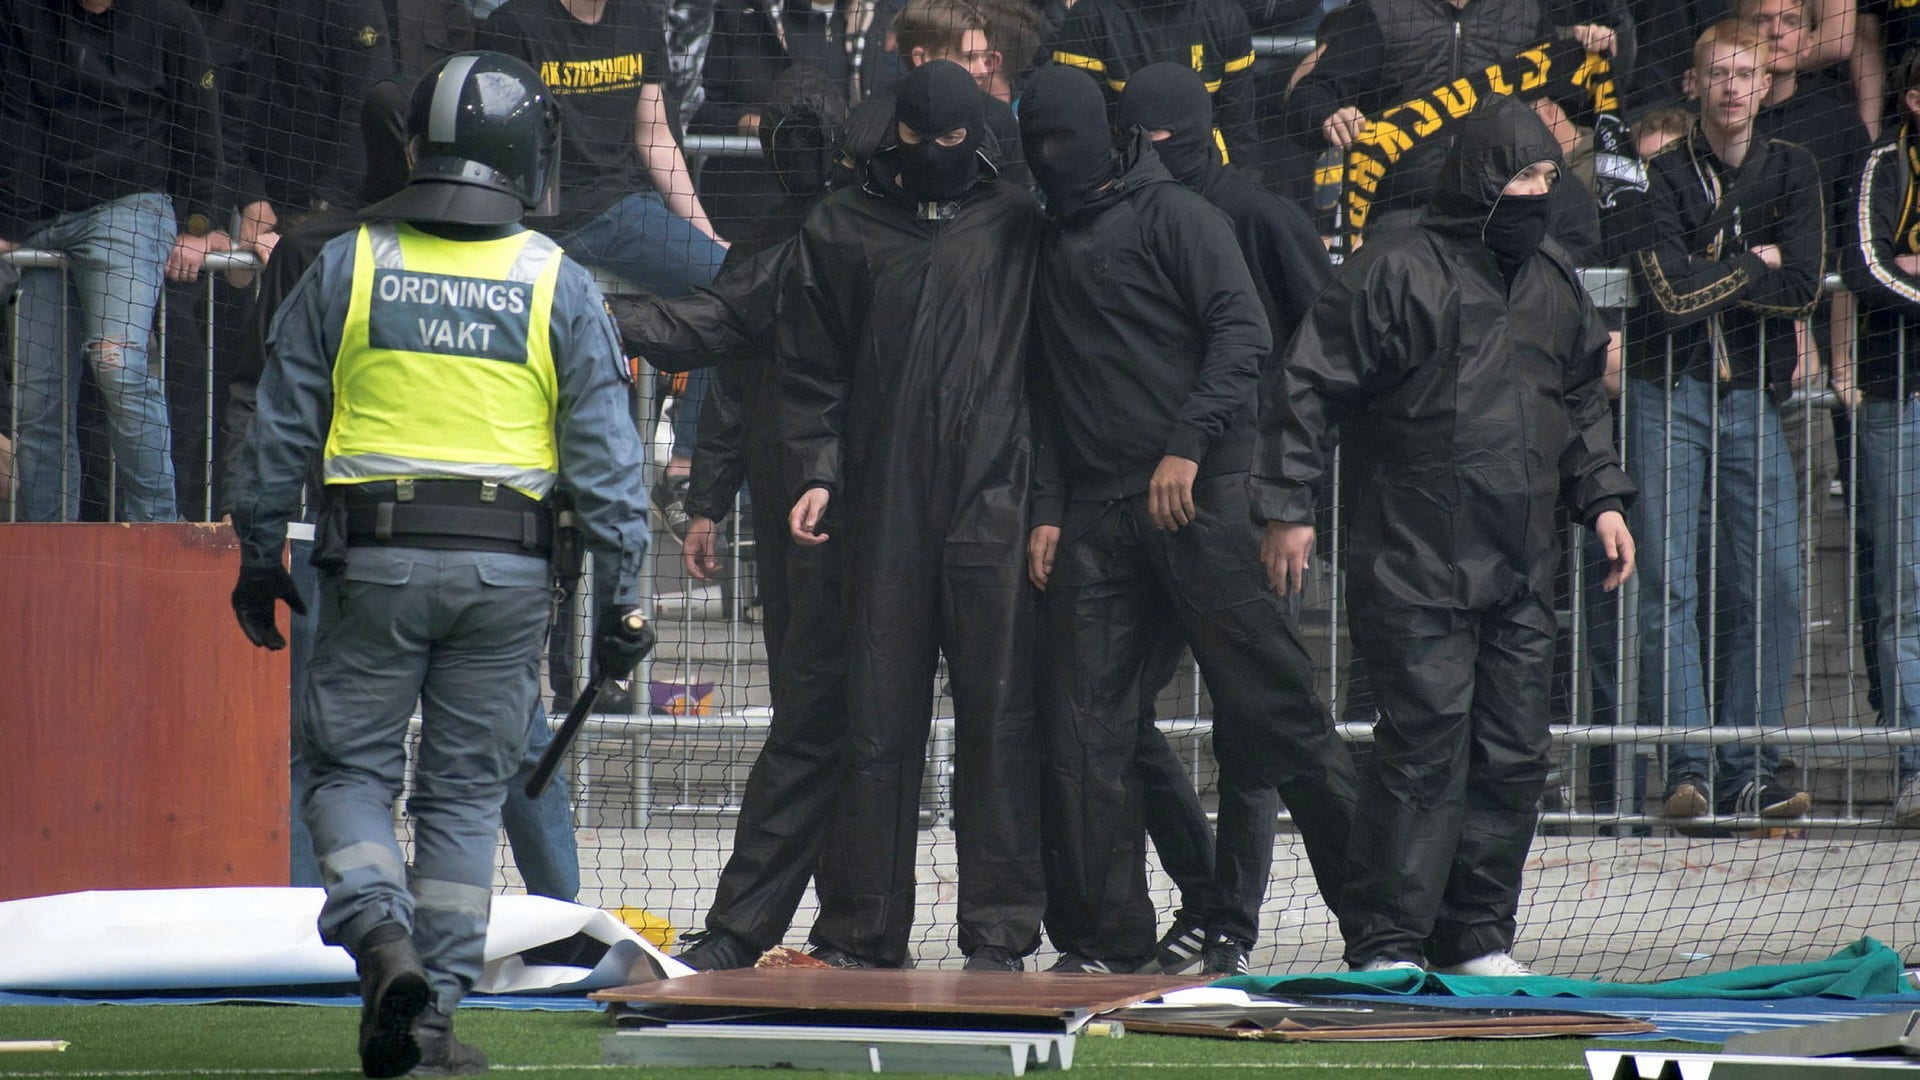 Anhängare till AIK planerade att stoppa förra årets vårderby mot Djurgården flera dagar i förväg, enligt gruppchattar som polisen har kommit över. Den 17 maj får 16 personer sin dom för delaktighet i kravallerna. Fem av dem misstänks för anstiftan till våldsamt upplopp.